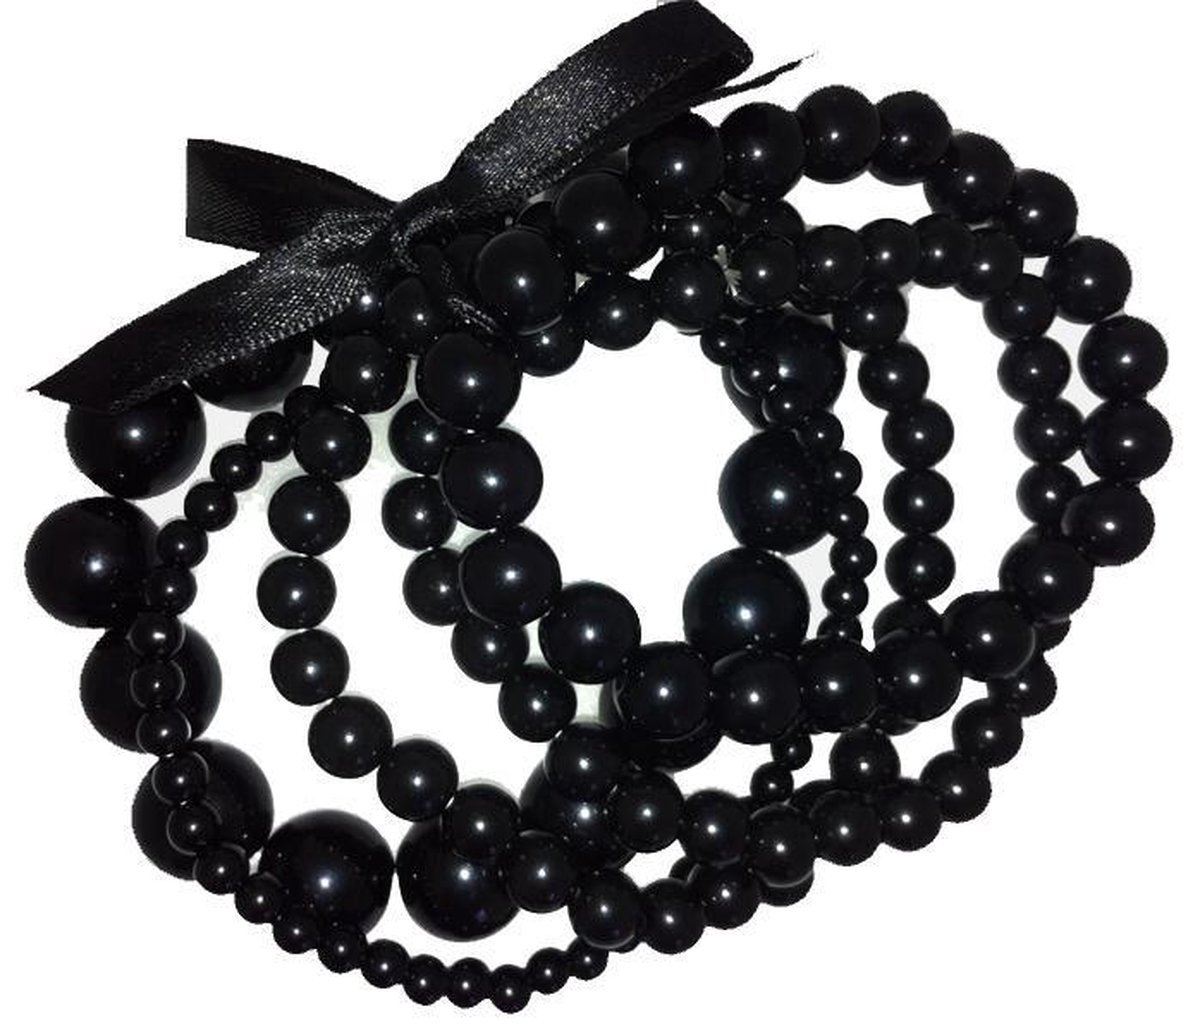 Behave - Armband - setje van 5 elastische Armbandjes met zwarte parels - Behave